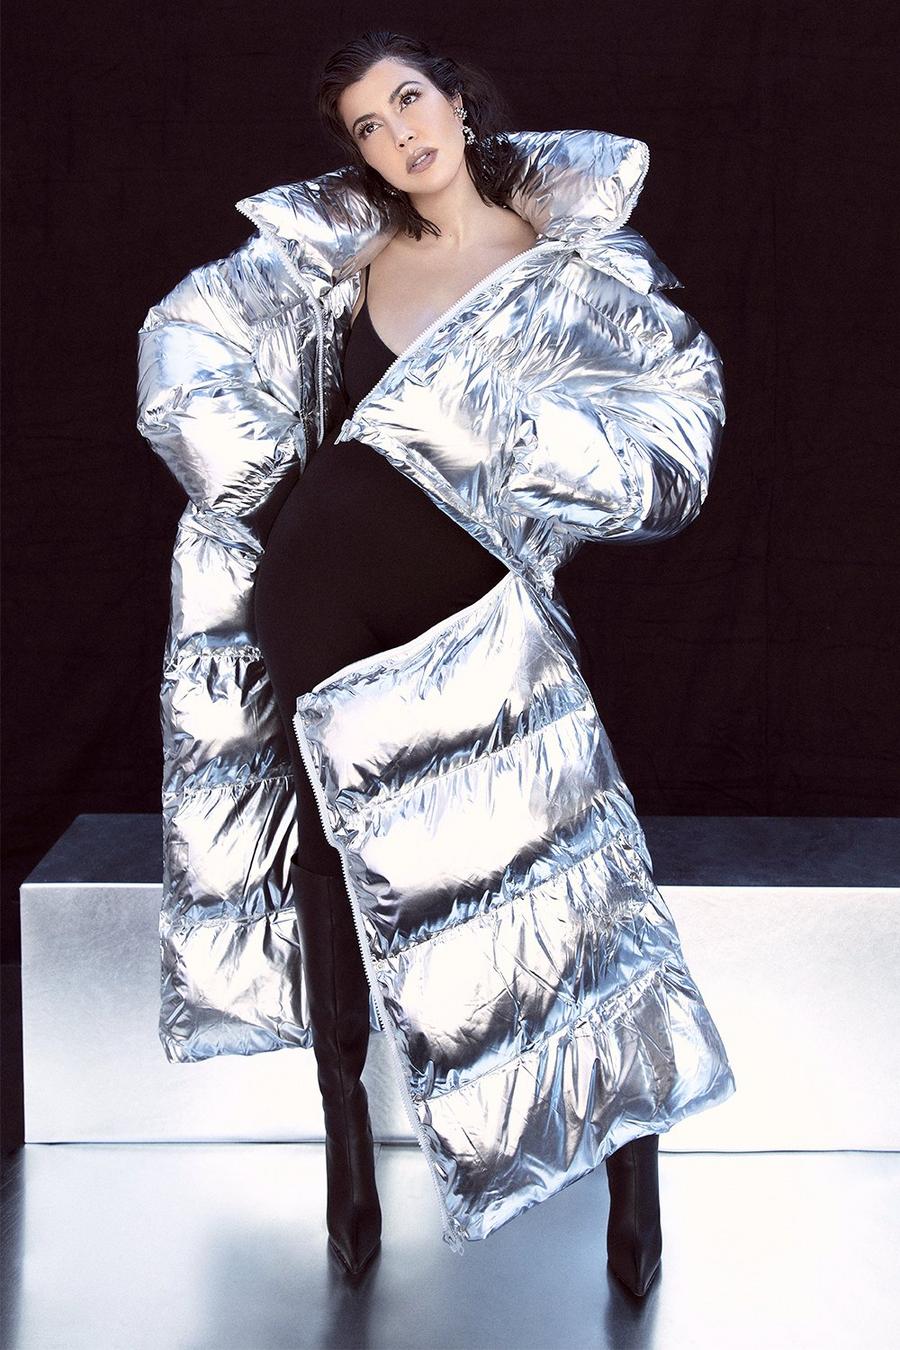 Silver Kourtney Kardashian Barker 4 In 1 Detachable Puffer Jacket